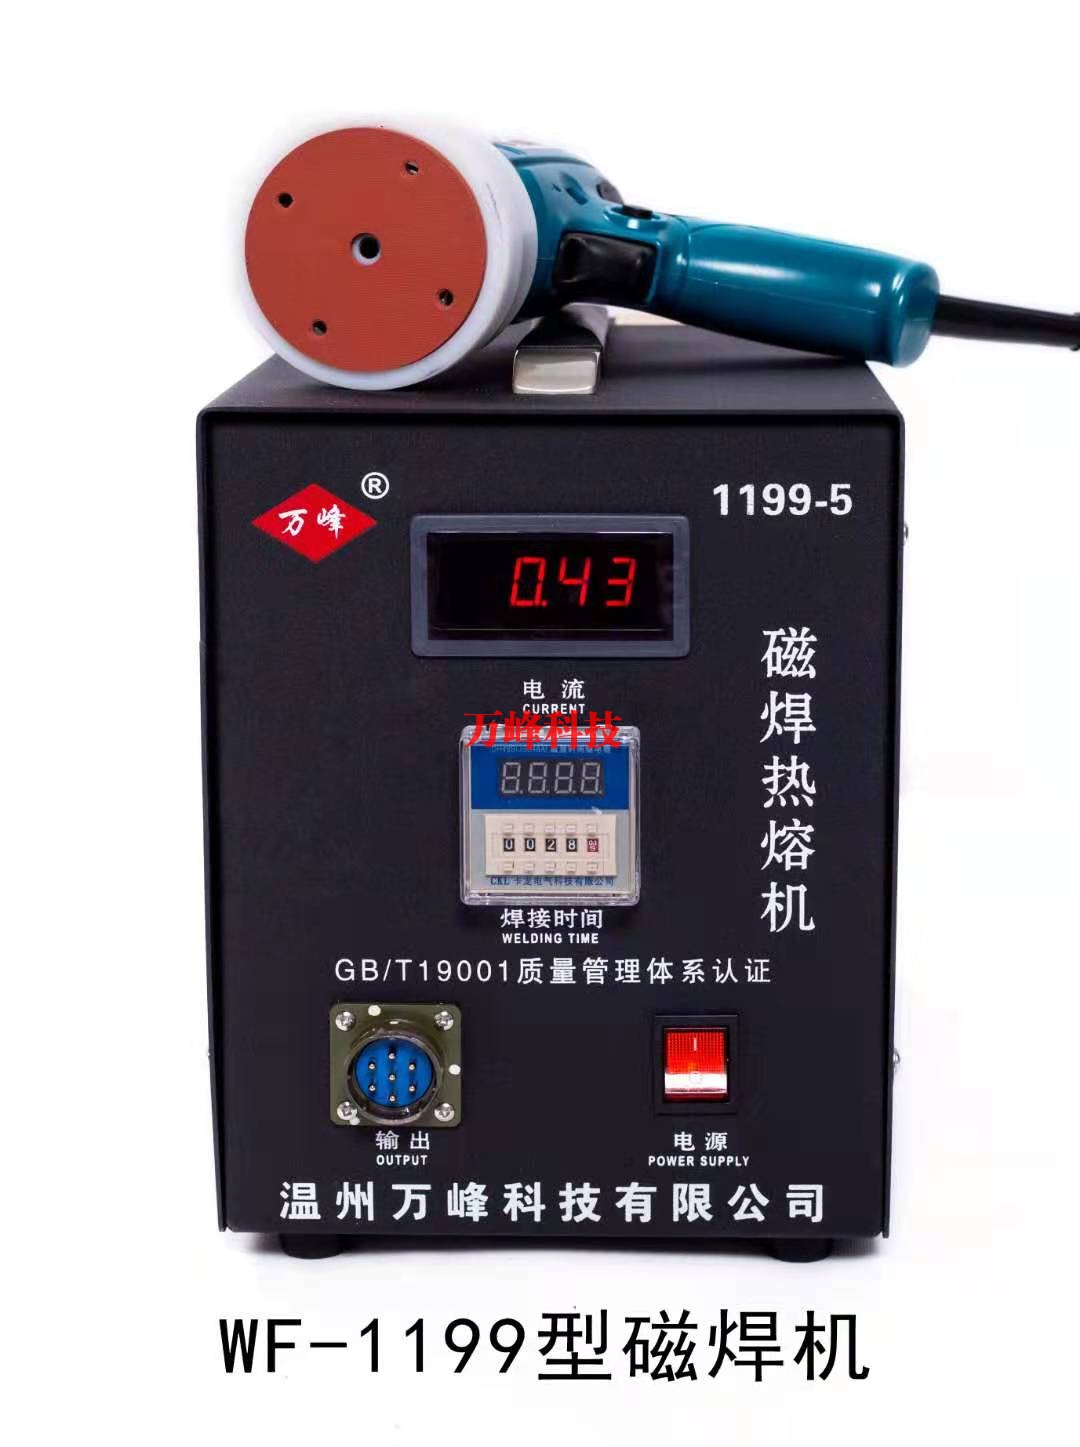 鹤岗WF-1199型磁焊热熔机